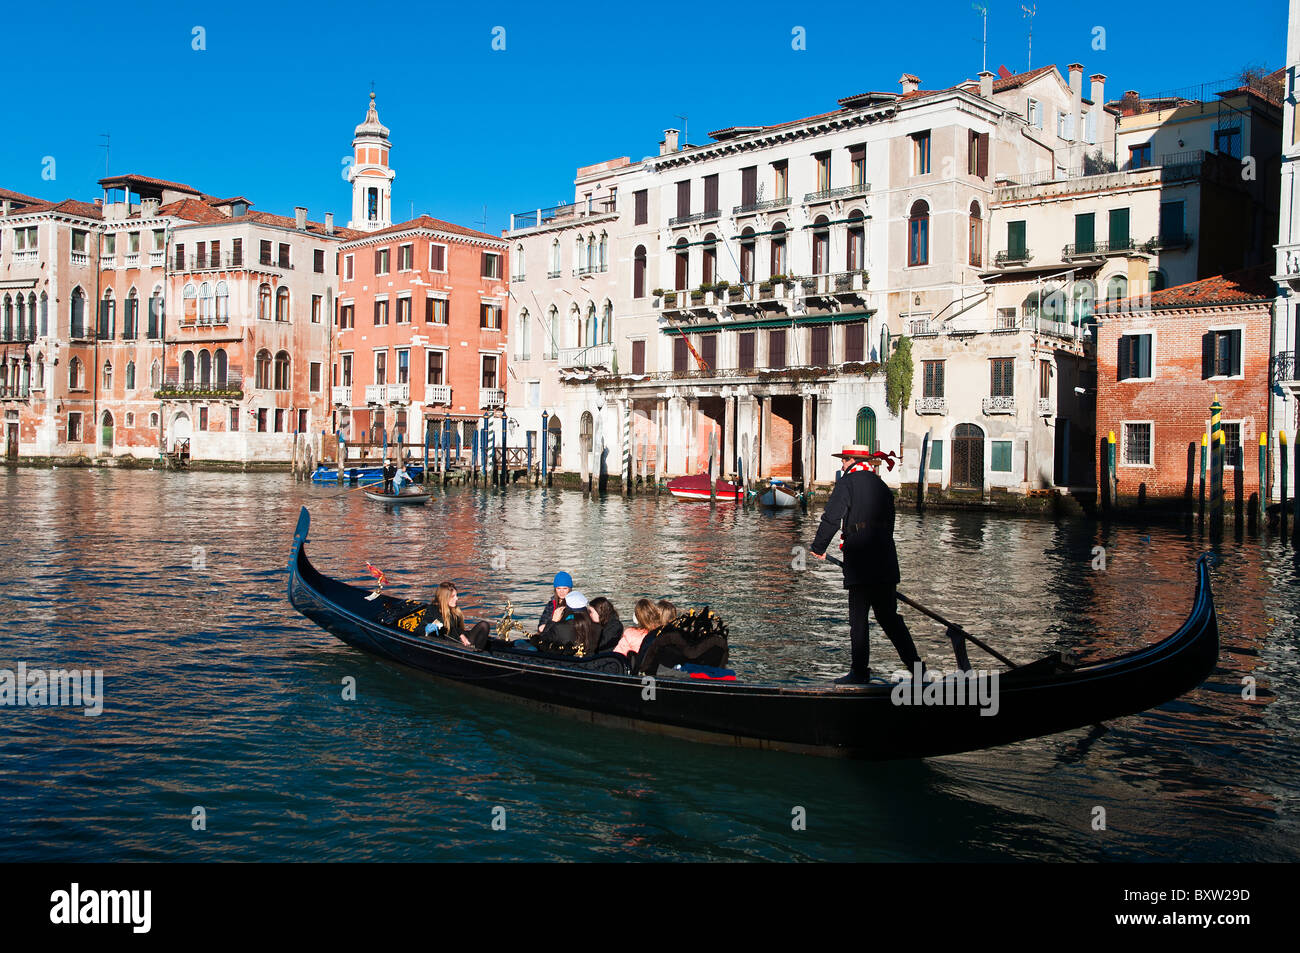 Gondole et gondolier de touristes sur le Grand Canal (Canal Grande), Venise, Italie Banque D'Images